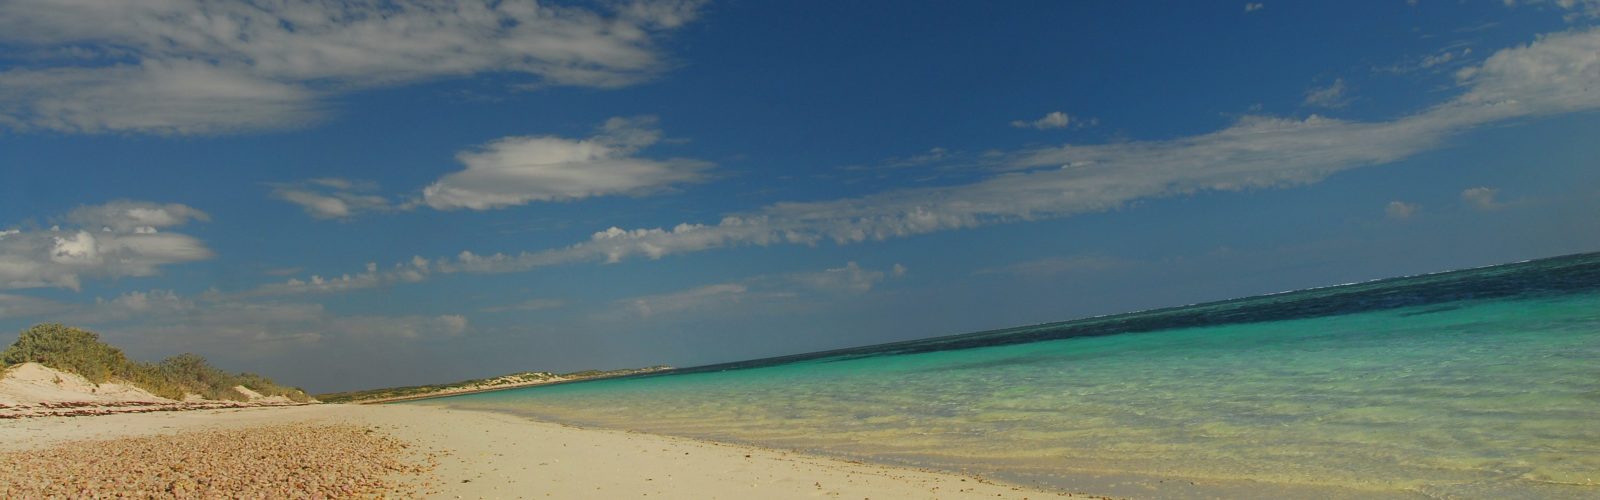 beach sal salis